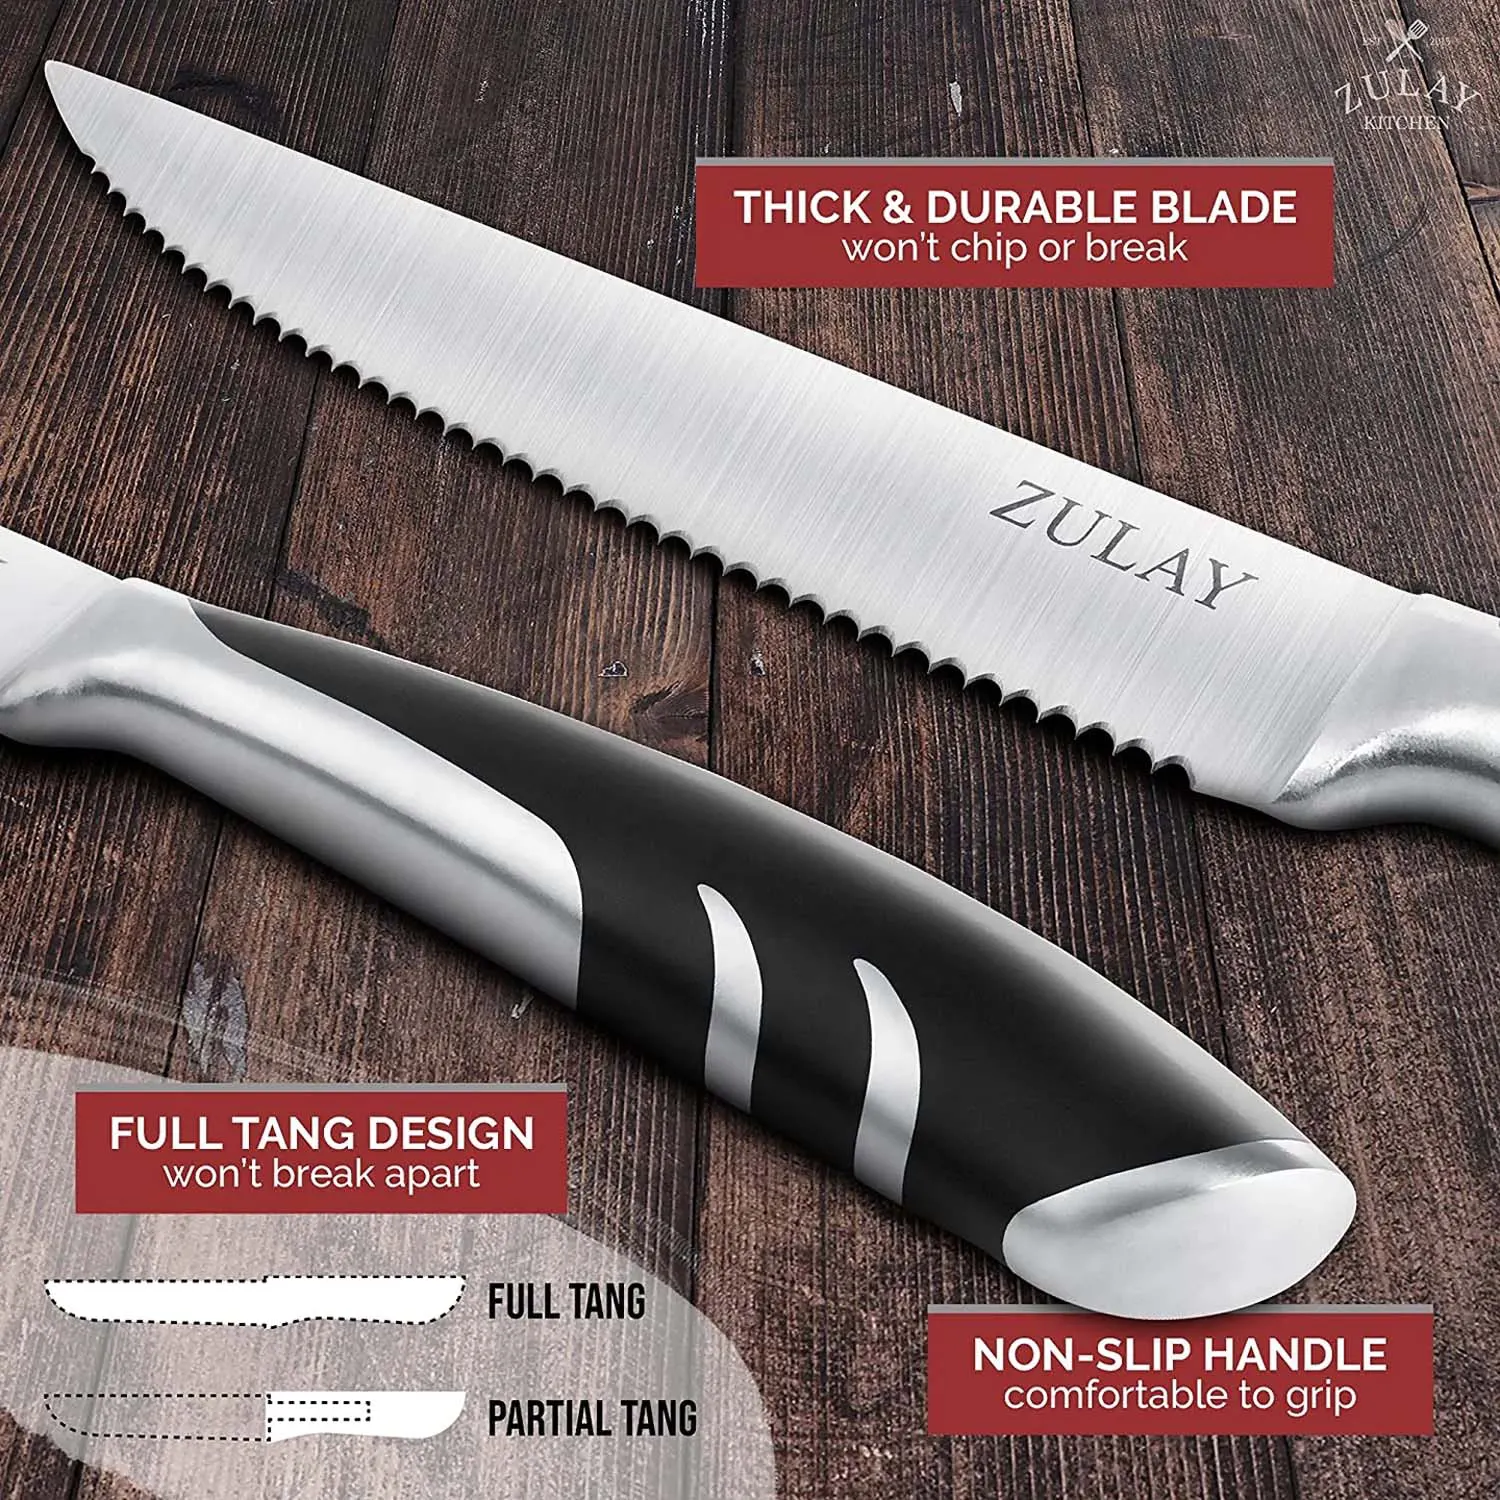 Steak Knives Set Of 4 - 5 Inch Full Tang Serrated Stainless Steel Steak Knife Set